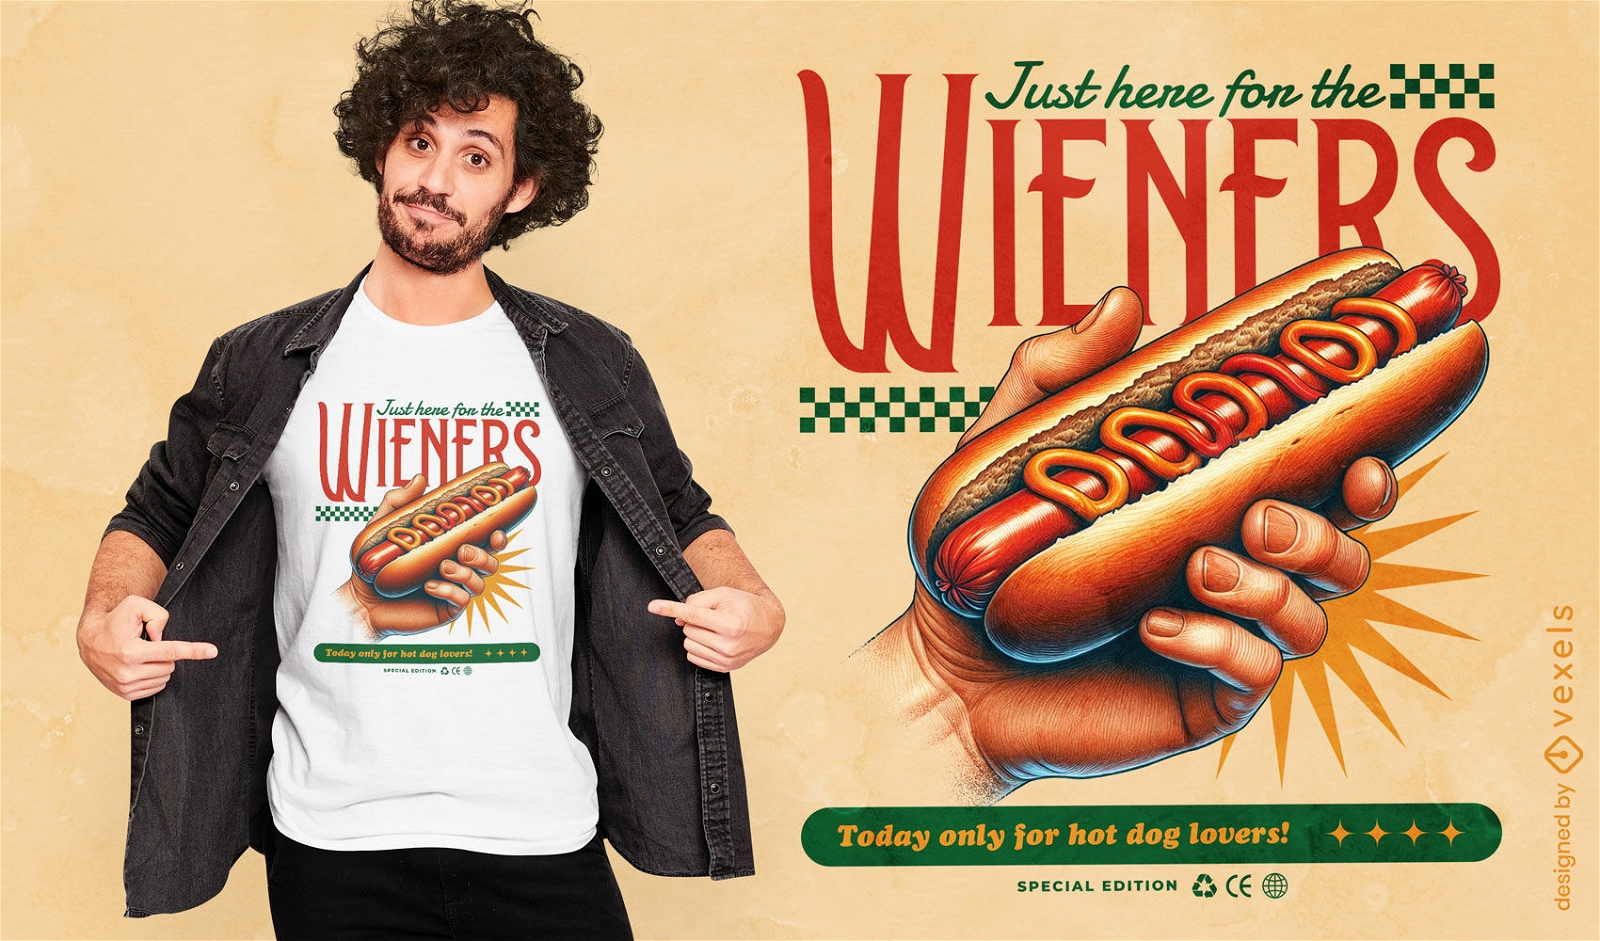 Diseño de camiseta para amantes de los hot dogs.